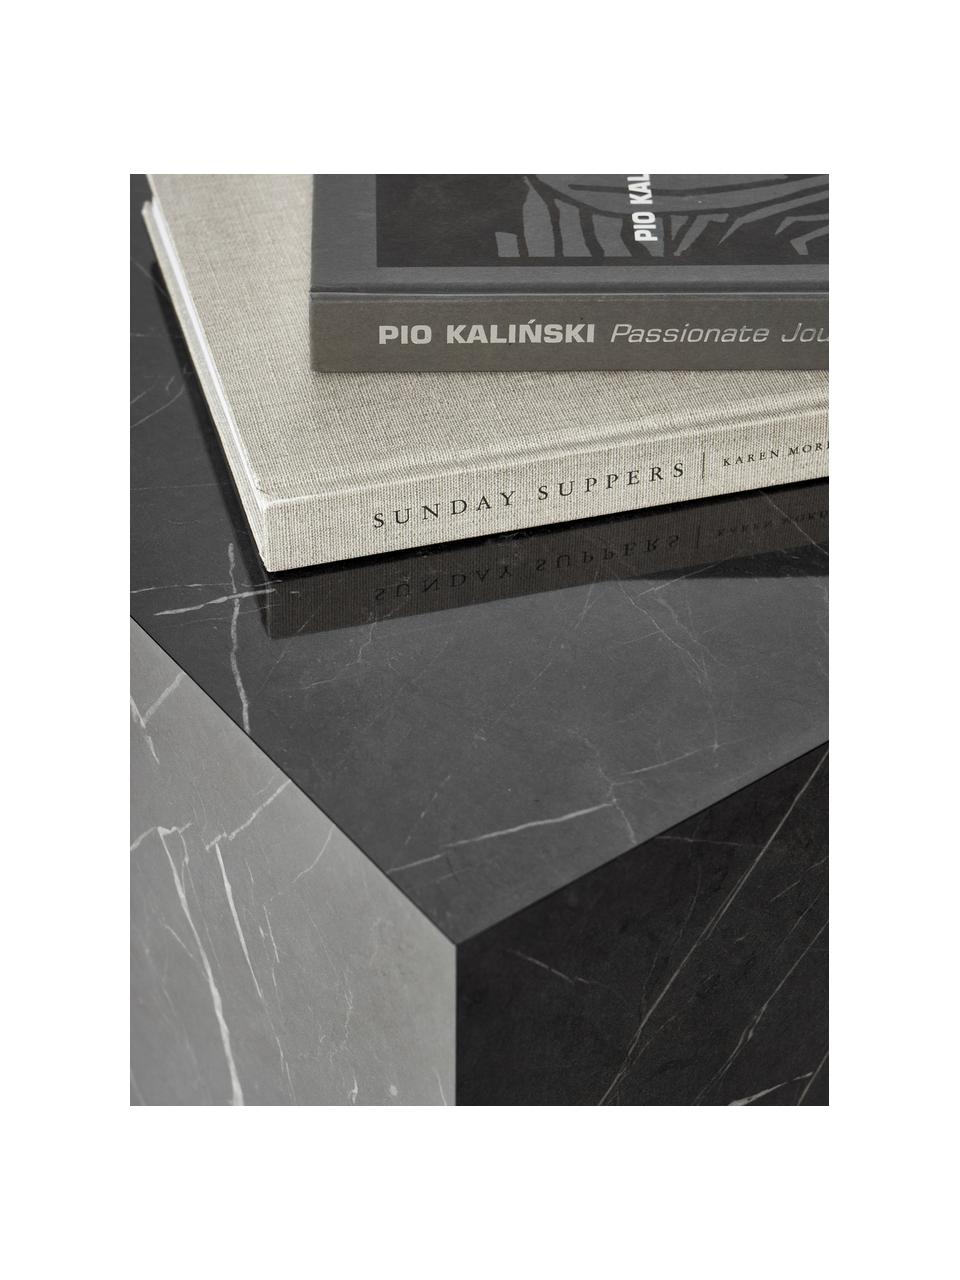 Tavolino effetto marmo Lesley, Pannello MDF (fibra a media densità) rivestito con foglio di melamina, Effetto marmo nero lucido, Larg. 45 x Alt. 50 cm